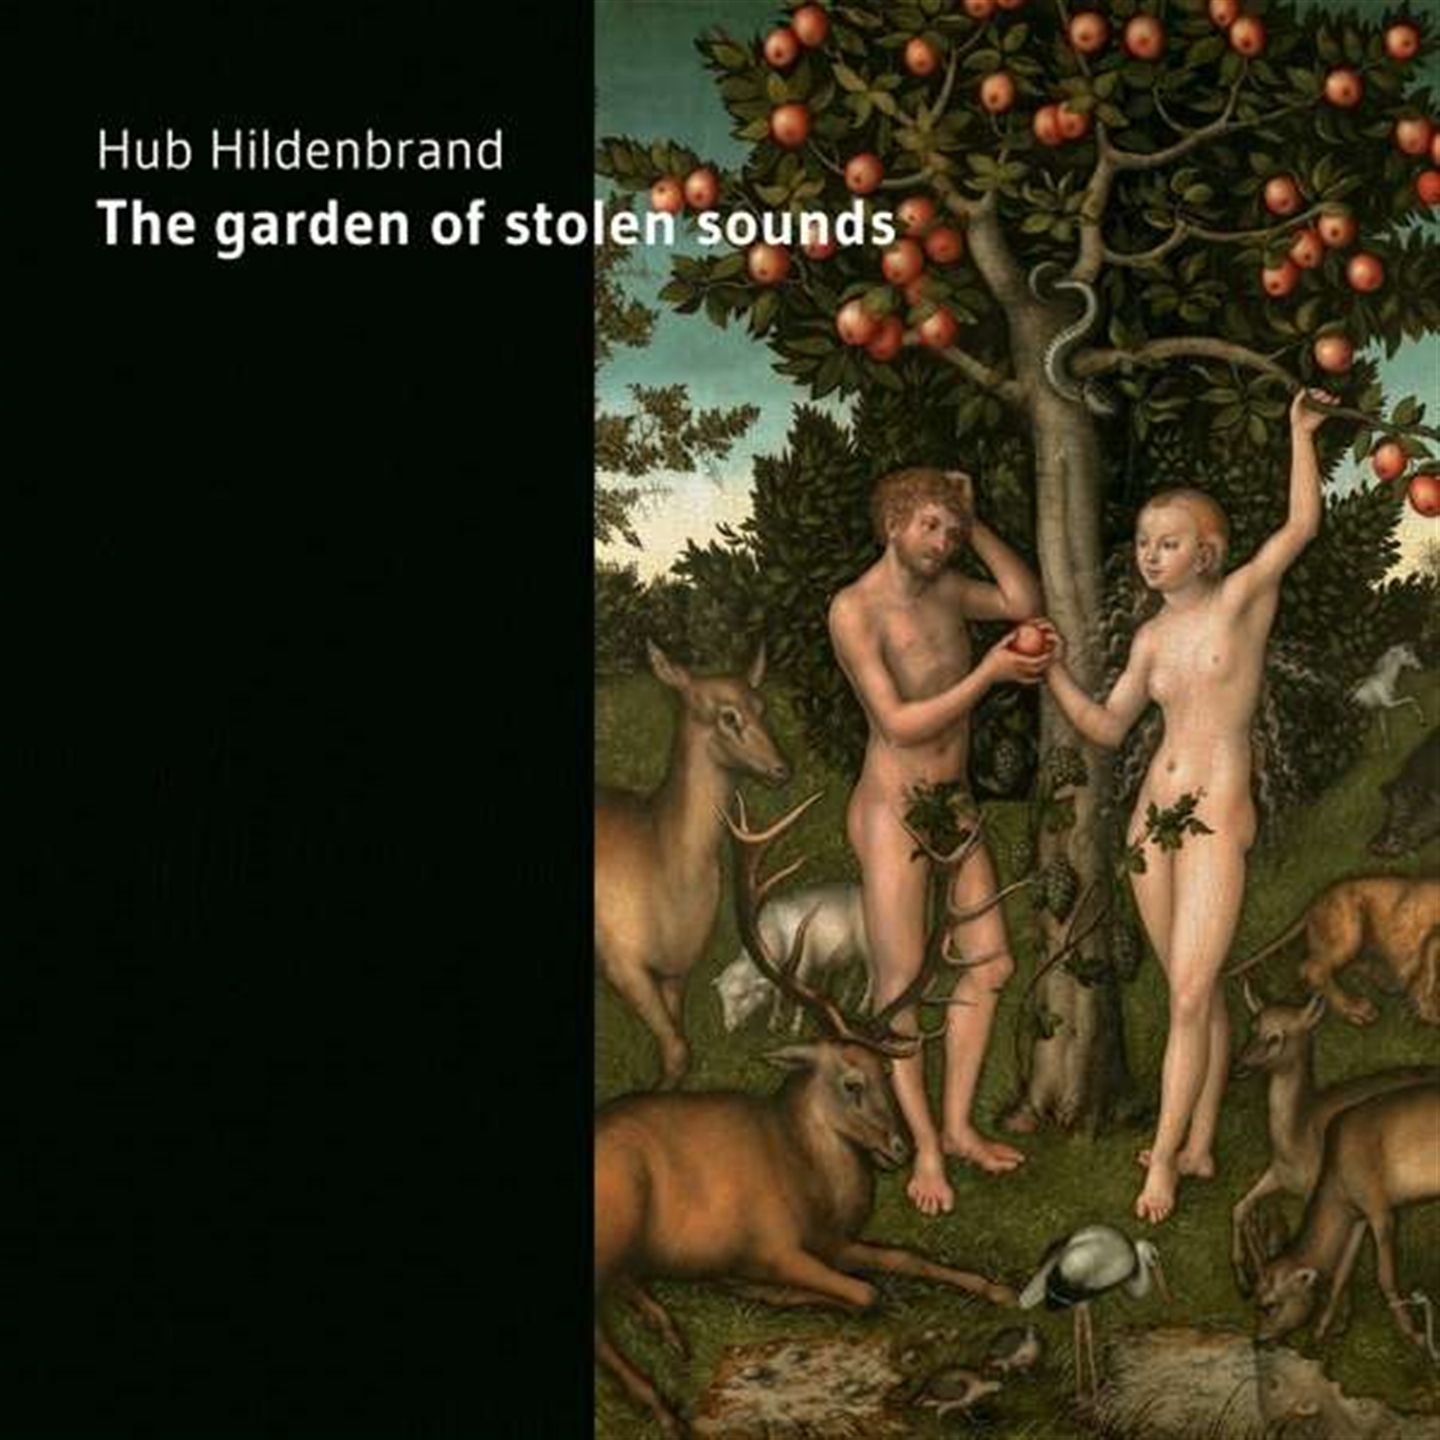 Hub Hildenbrand - The Garden Of Stolen Sounds - Photo 1/1